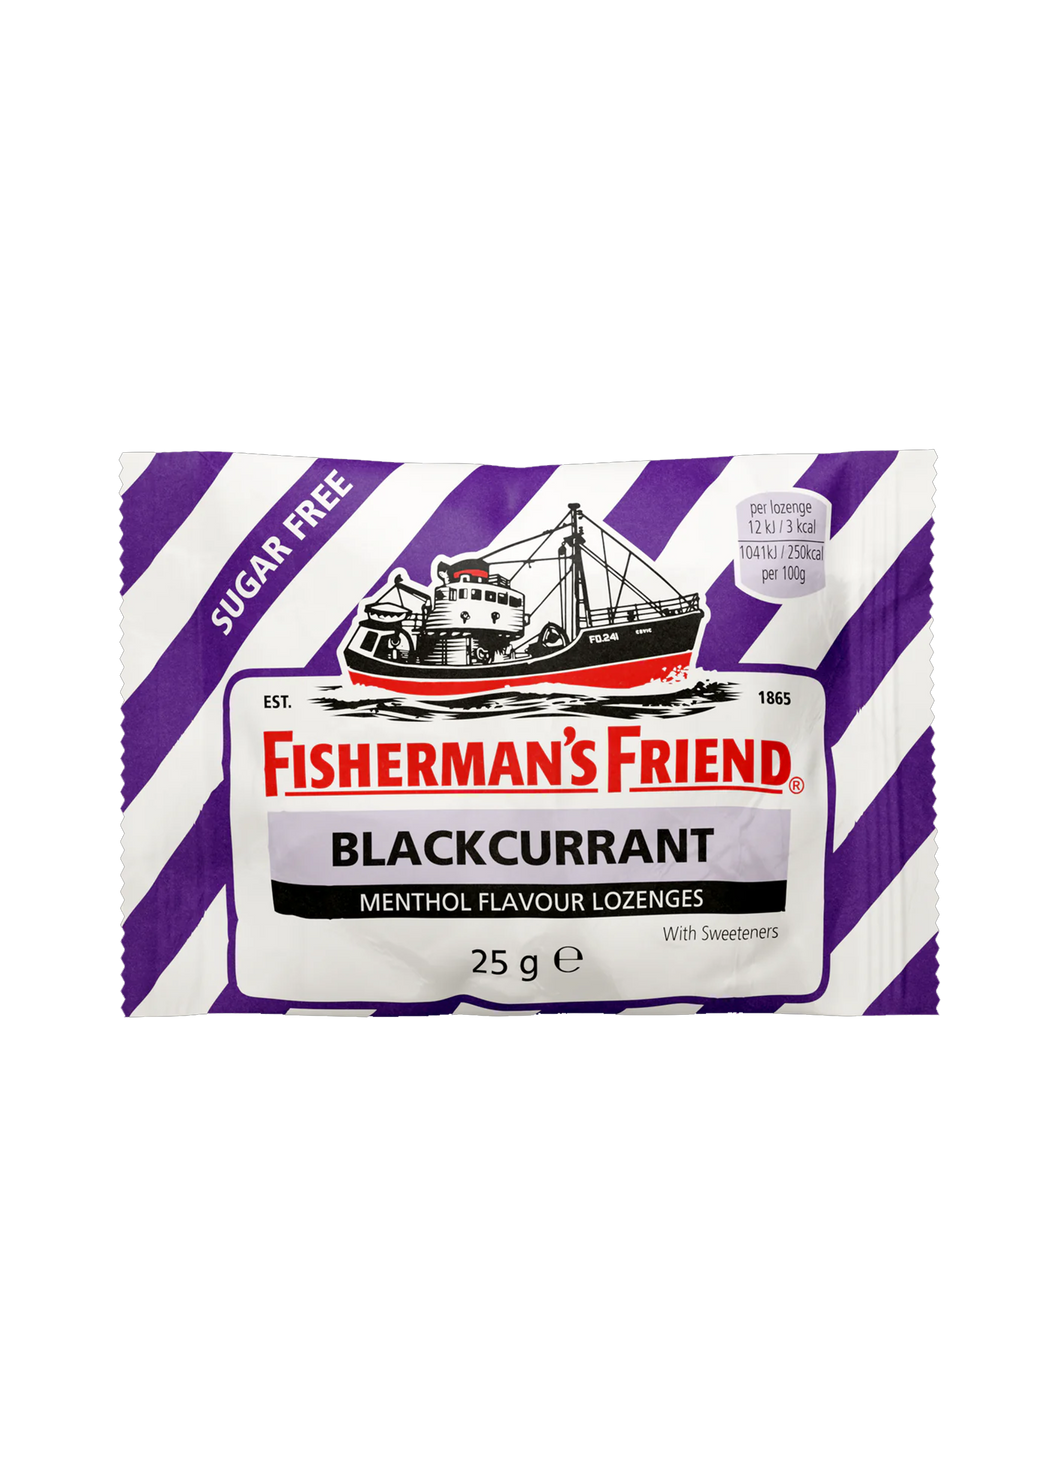 Fisherman's Friend Sugar Free Menthol Blackcurrant Flavour Lozenges 25g